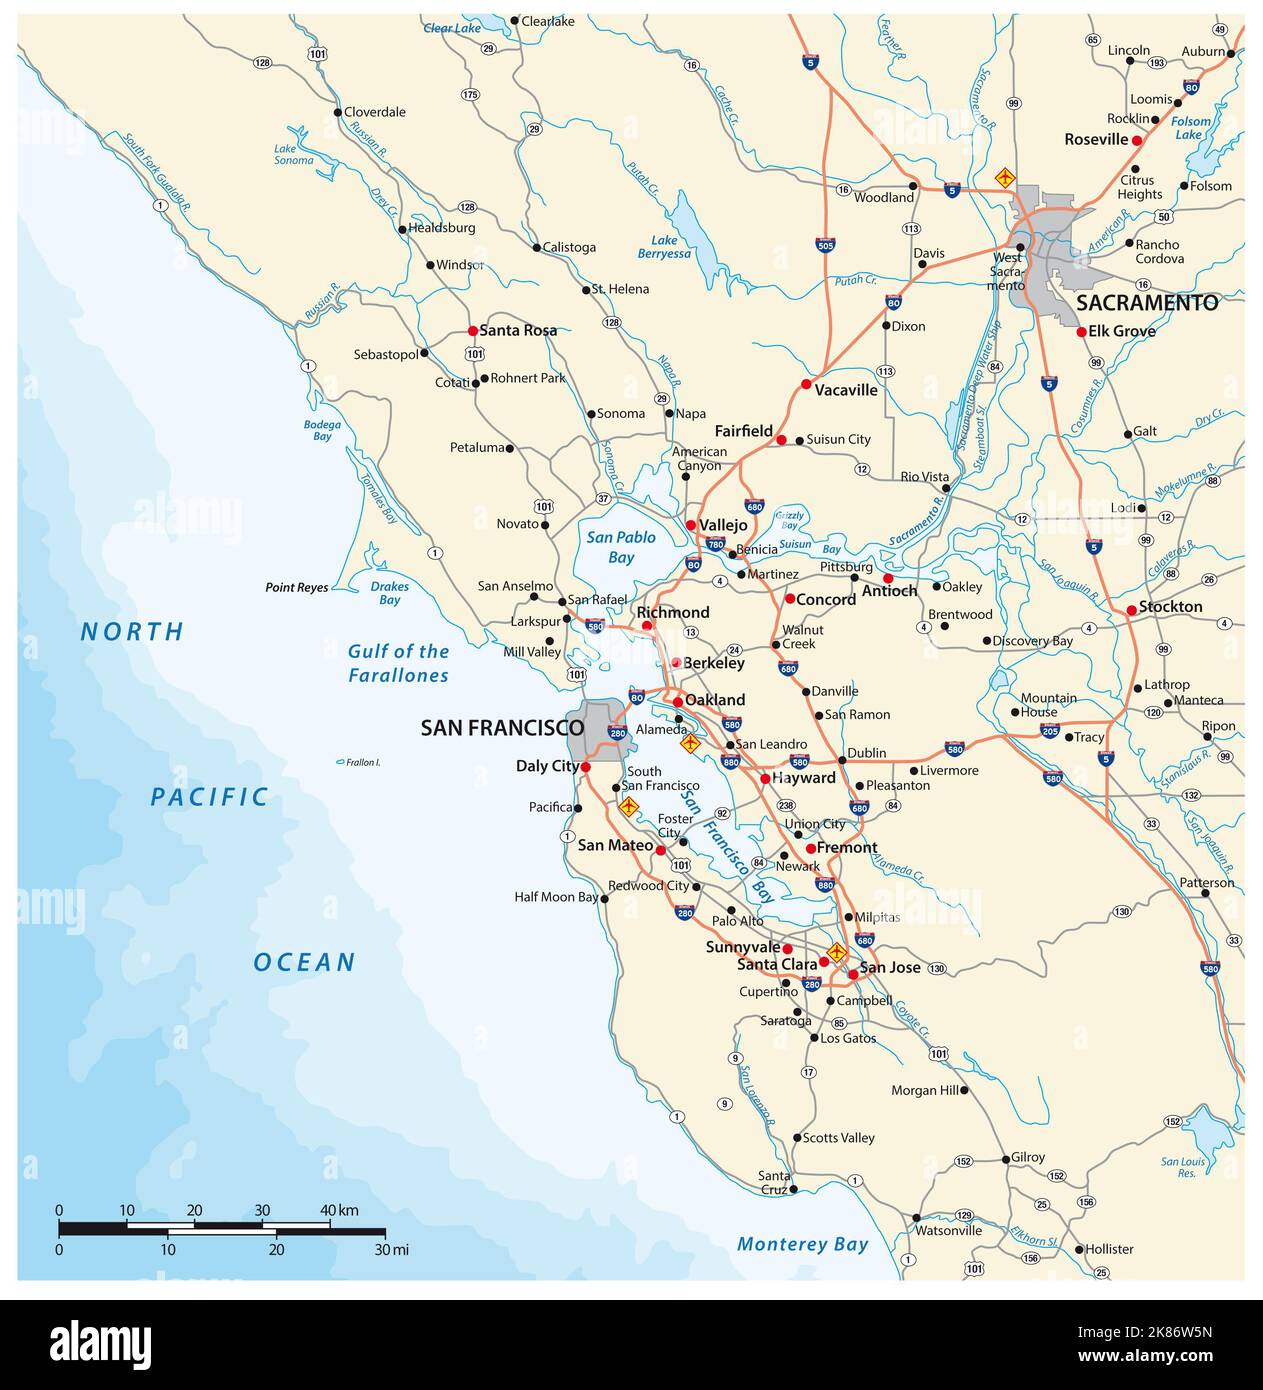 Carte routière de la région de la baie de San Francisco, Californie, États-Unis Banque D'Images